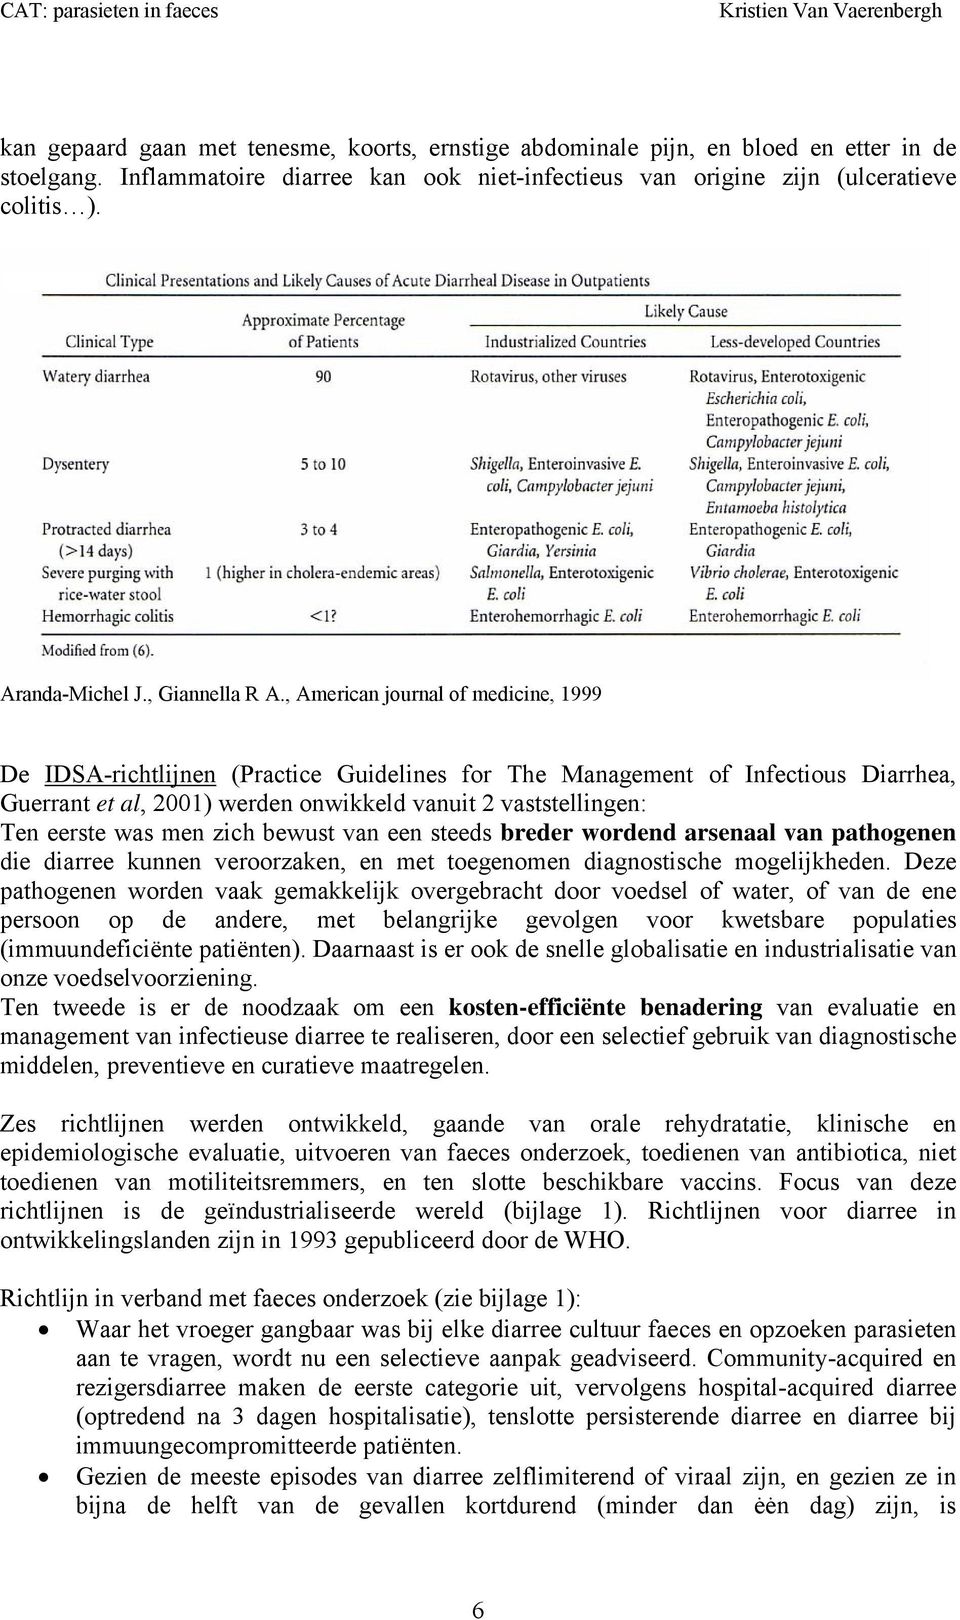 , American journal of medicine, 1999 De IDSA-richtlijnen (Practice Guidelines for The Management of Infectious Diarrhea, Guerrant et al, 2001) werden onwikkeld vanuit 2 vaststellingen: Ten eerste was